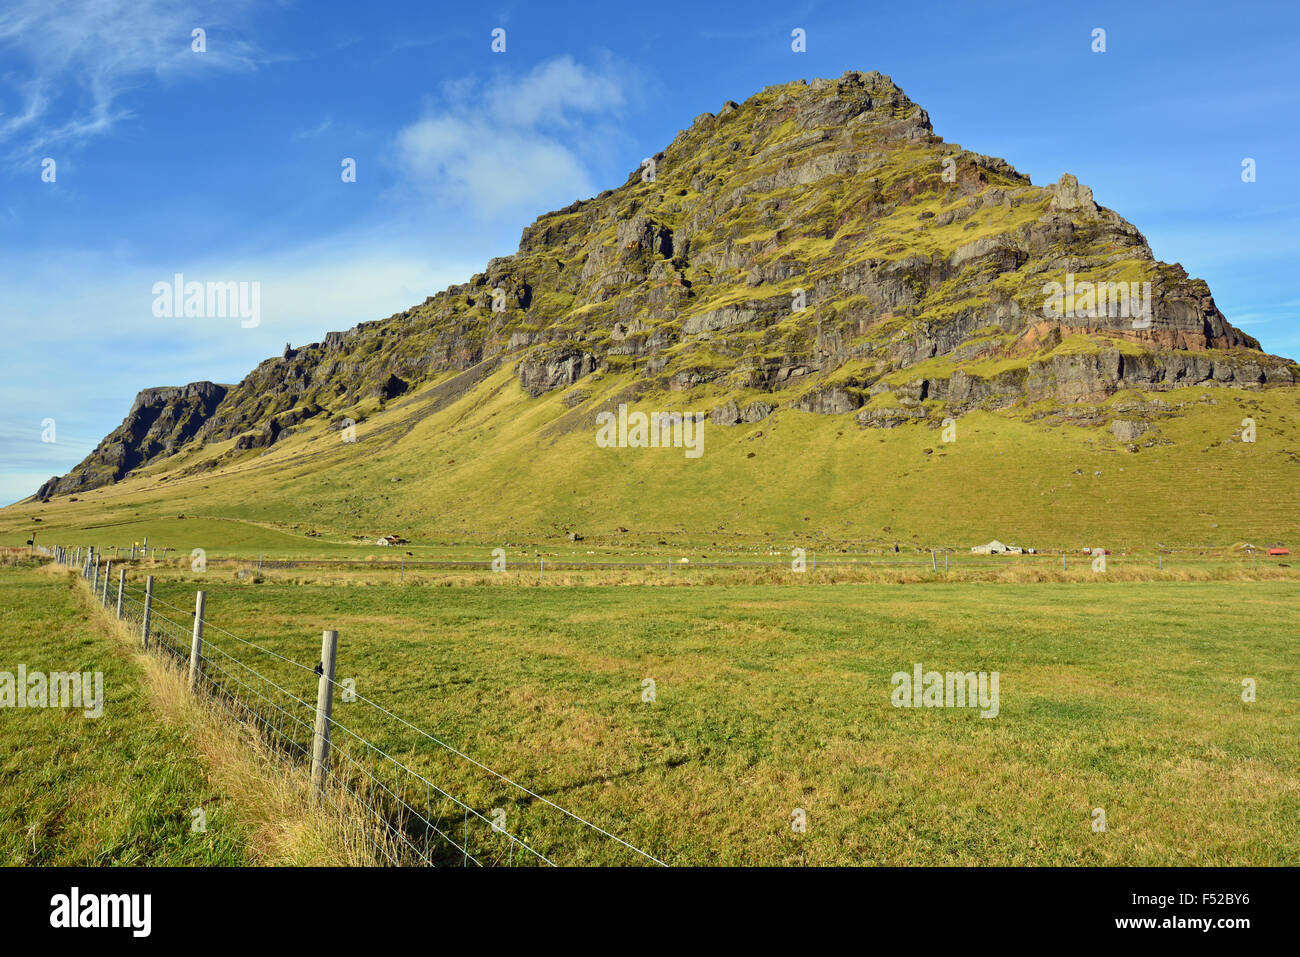 Sperone roccioso vicino al vulcano Eyjafjallajökull nel sud dell'Islanda Foto Stock